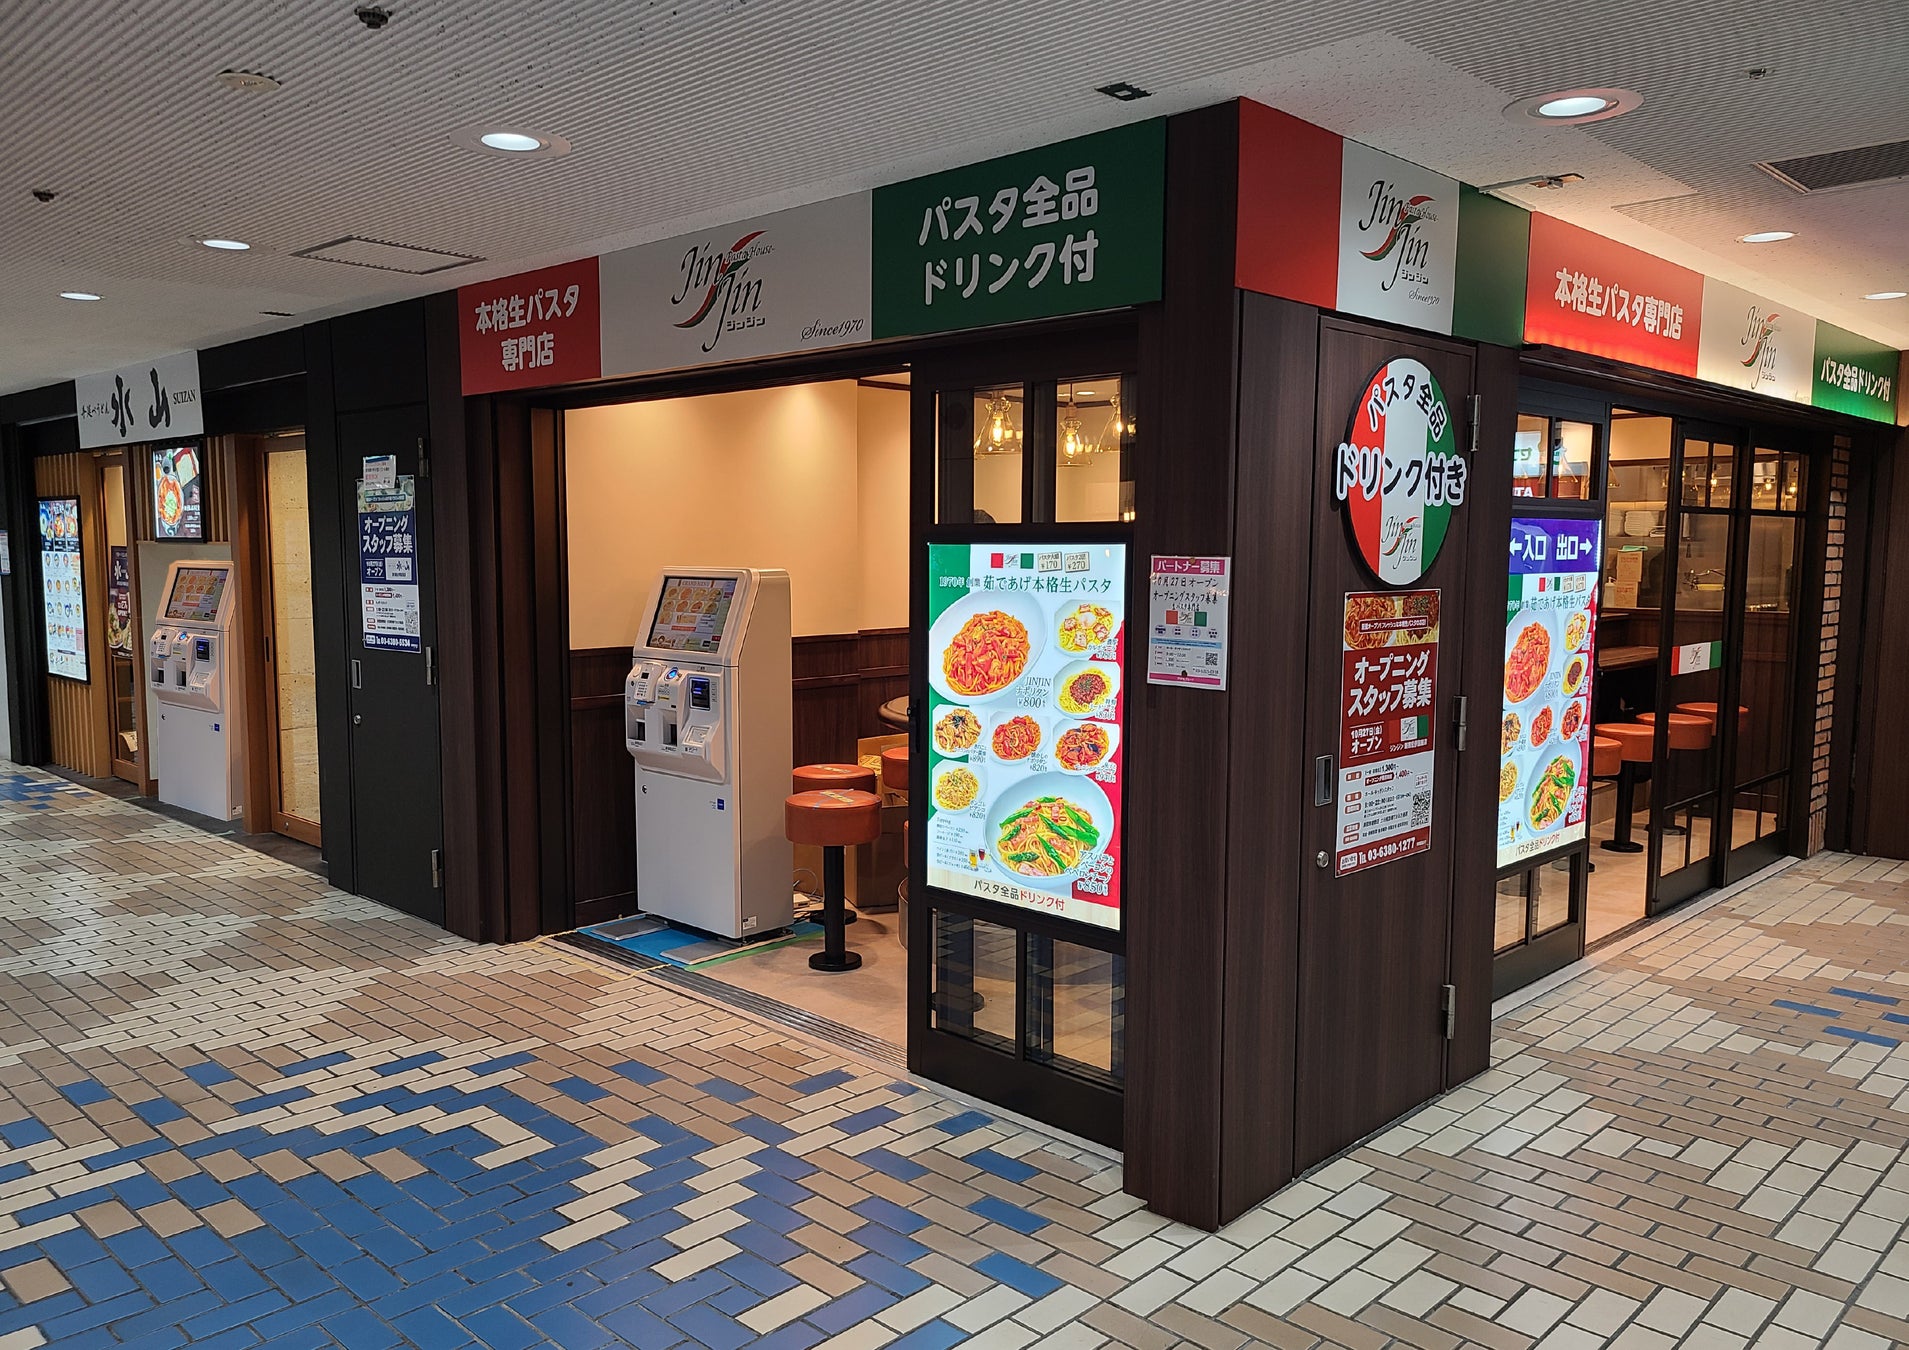 【新商品】無人ホルモン直売所に1パック500円の味付き冷凍肉「ムジホル食堂」が登場！